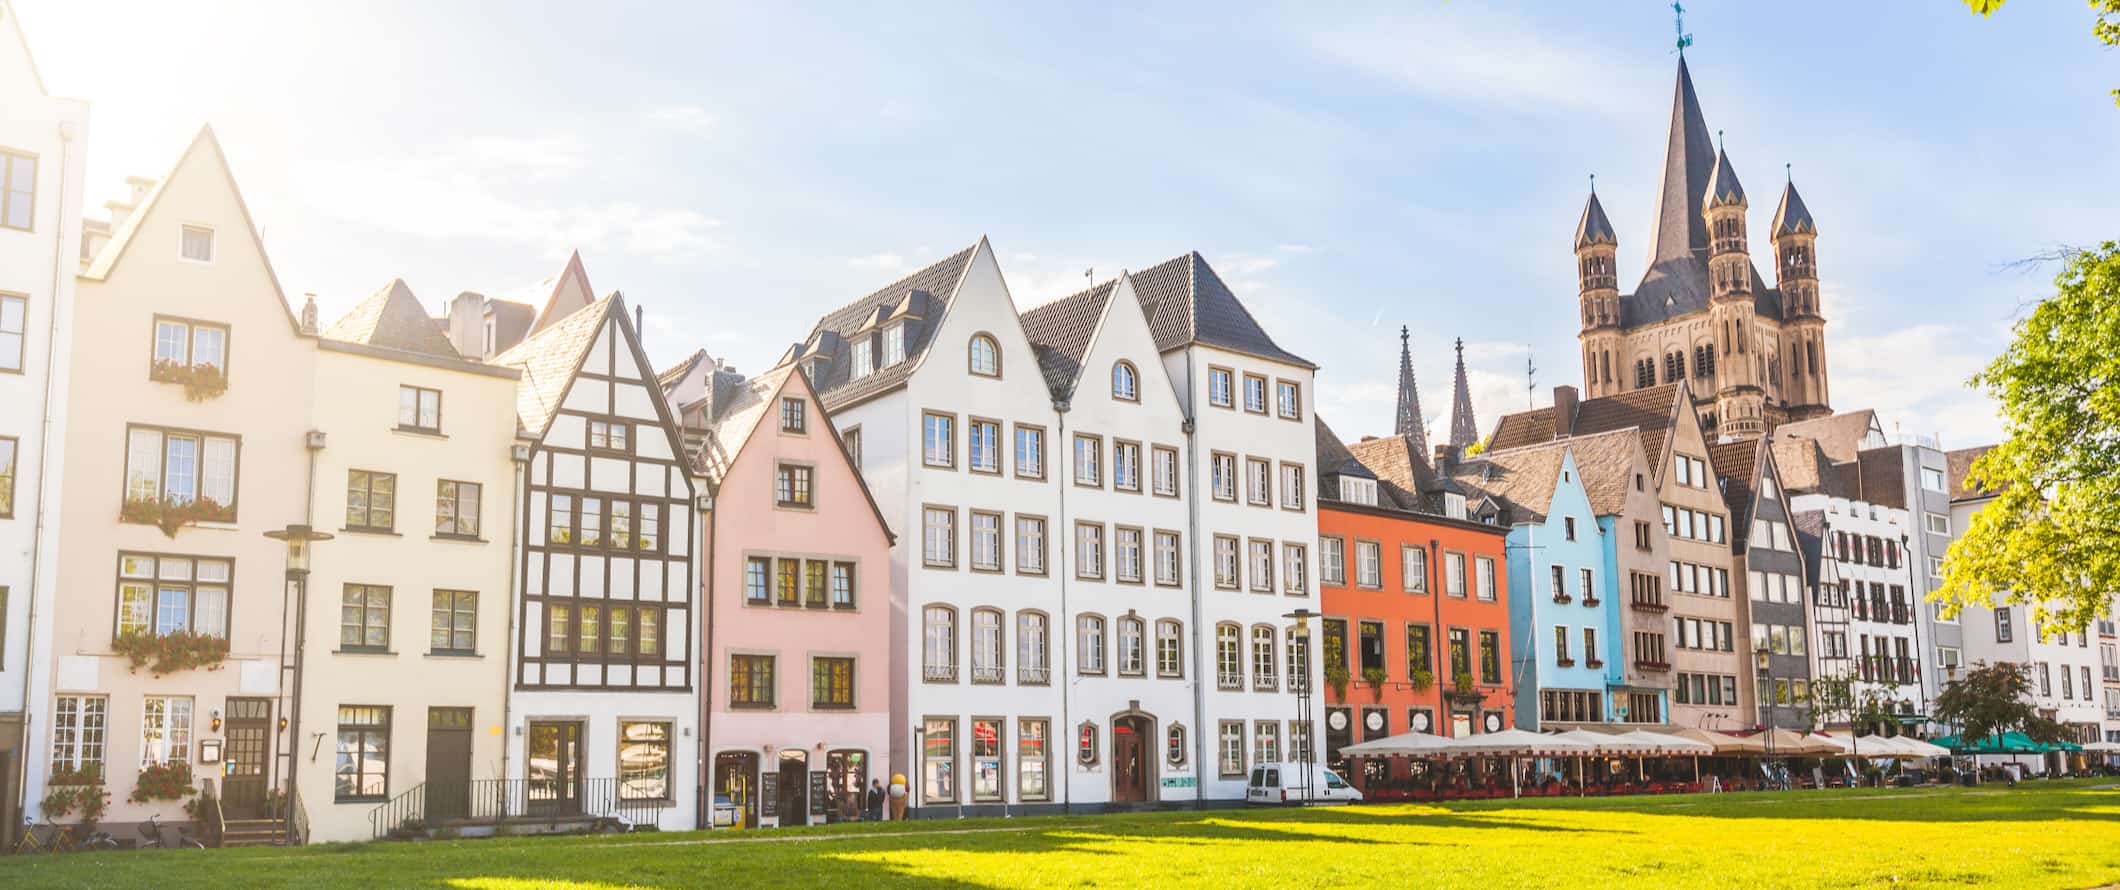 Fila de casas antigas coloridas na ensolarada Colônia, Alemanha